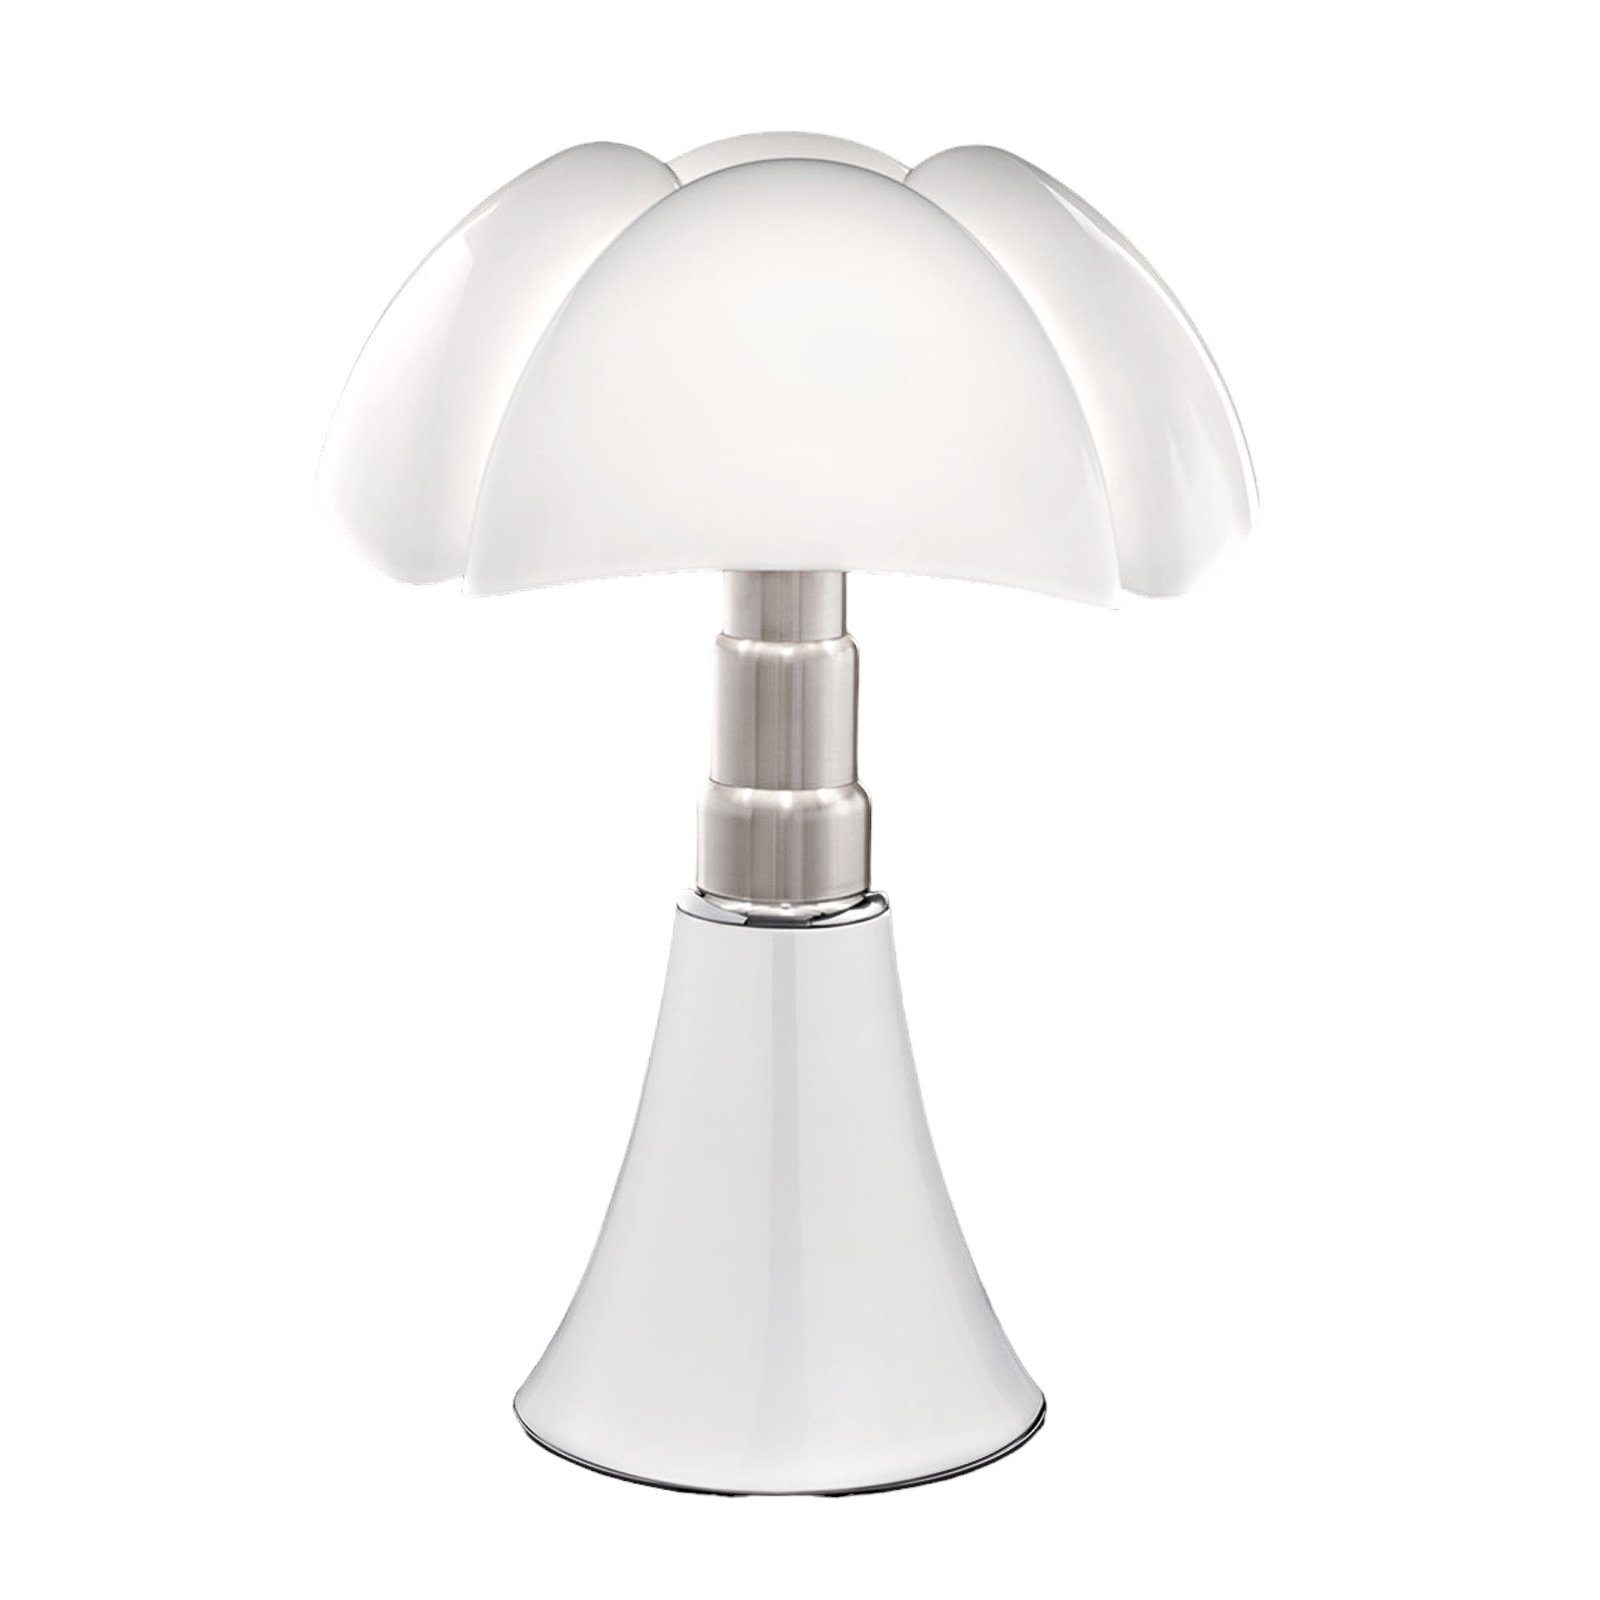 Højdeindstillelig bordlampe Pipistrello, i hvid